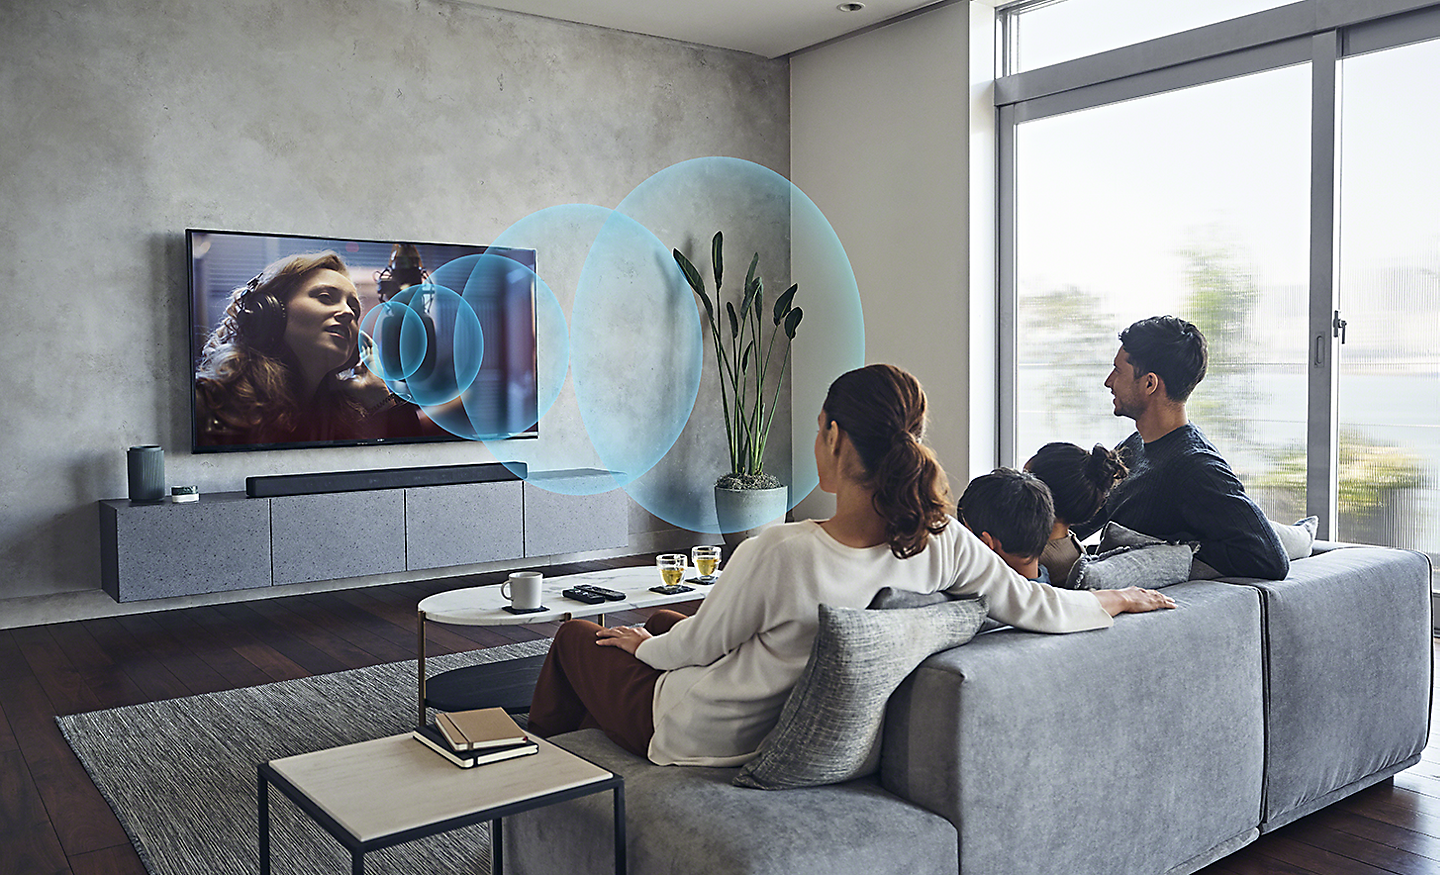 Image d'une famille dans un salon regardant une TV BRAVIA avec des ondes sonores bleues dessinées représentant Acoustic Center Sync